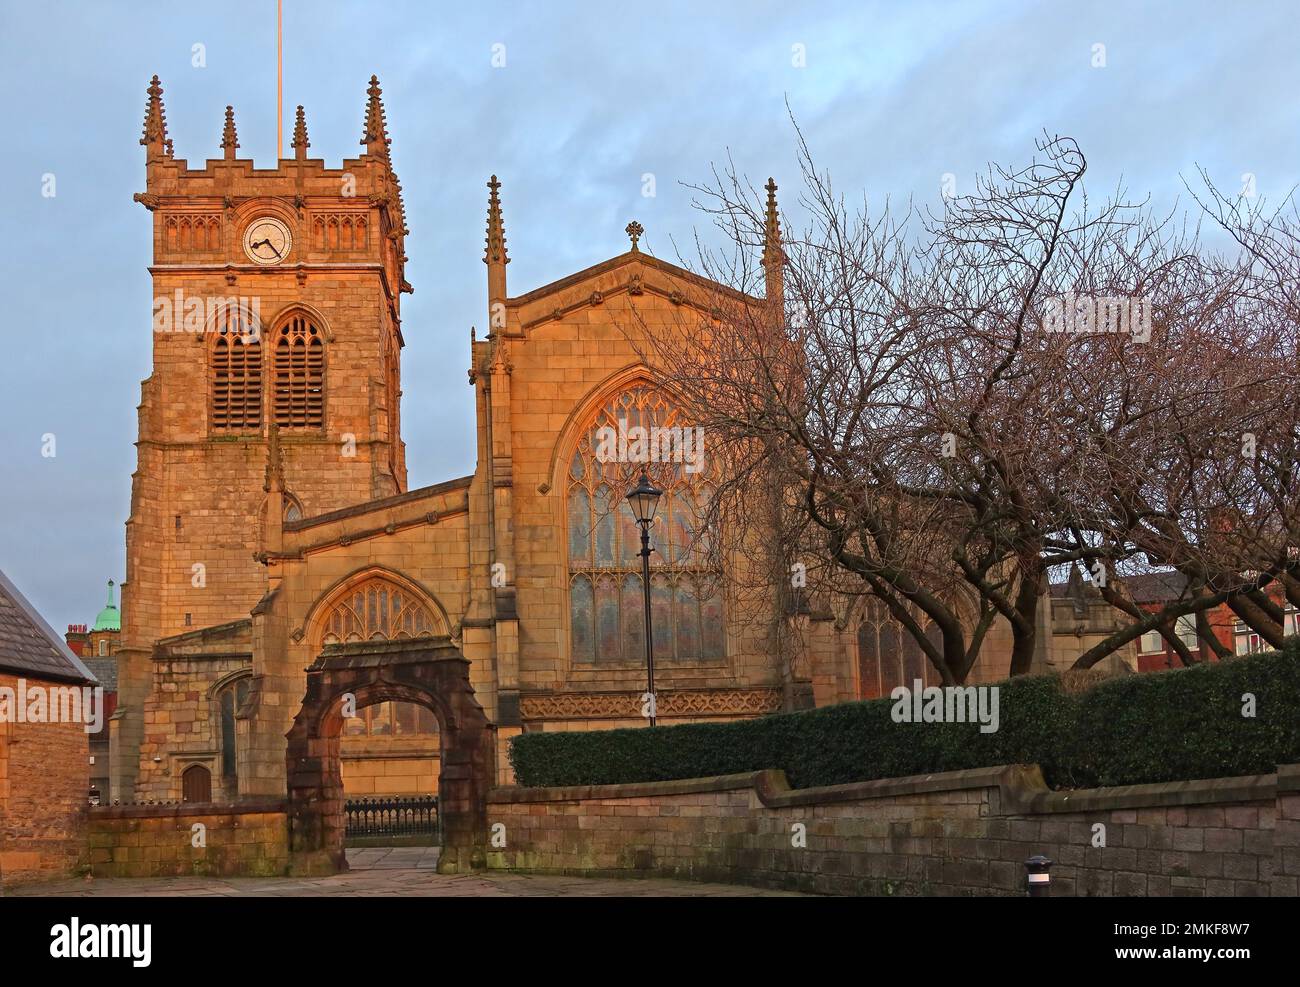 Kirche der Pfarrei All Saints, Bishopgate, Sonnenuntergang am Abend, Wigan, lancashire, England, Vereinigtes Königreich, WN1 1NV Stockfoto